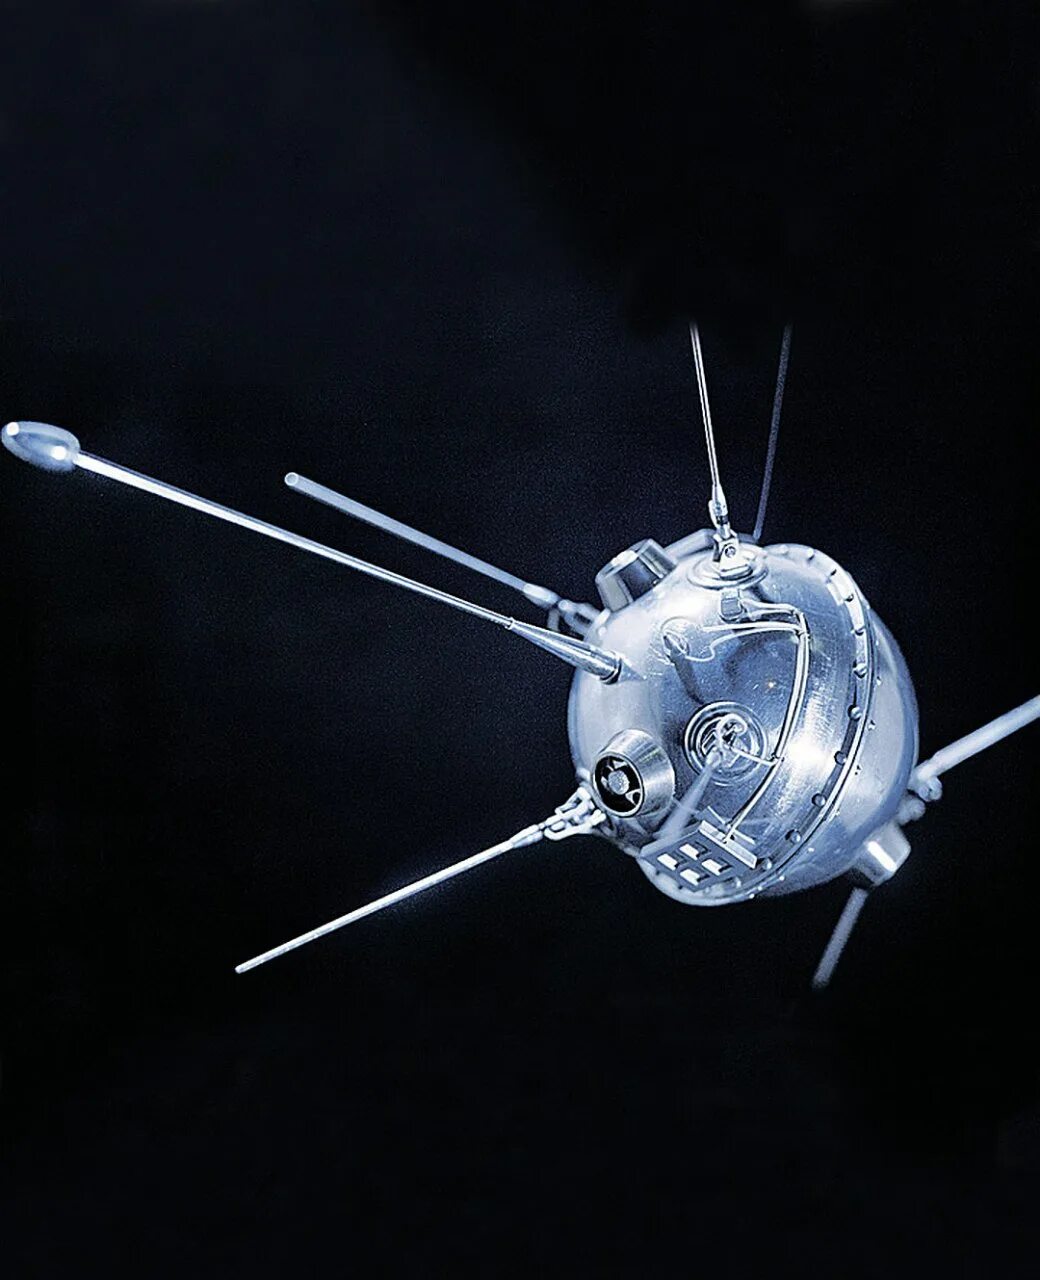 Луна 2 дата выхода в россии. Луна-2 автоматическая межпланетная станция. Луна-1 автоматическая межпланетная станция. Луна-11 автоматическая межпланетная станция. Первый космический Спутник.